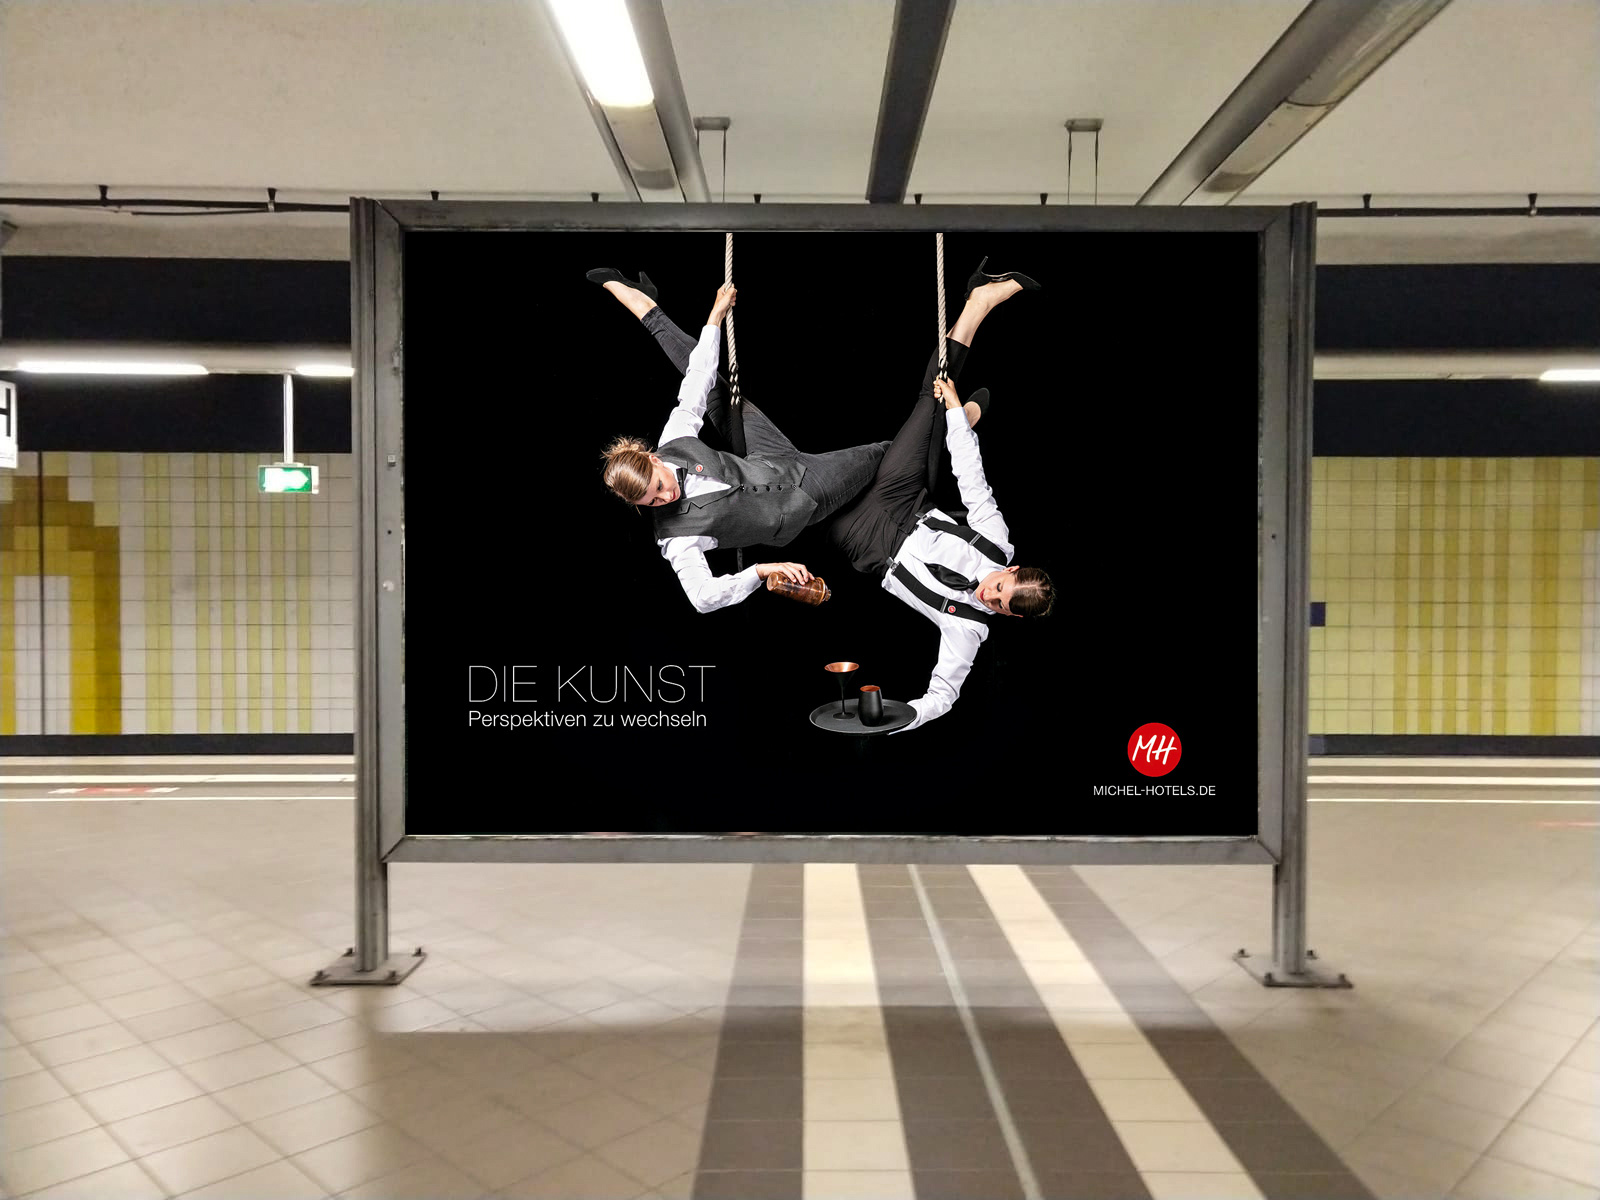 Michel Hotels Imagekampagne / Fotoshooting mit Artisten, initiiert von VIERZWEI, Grossflaechenplakat am Bahnsteig zur Ansicht